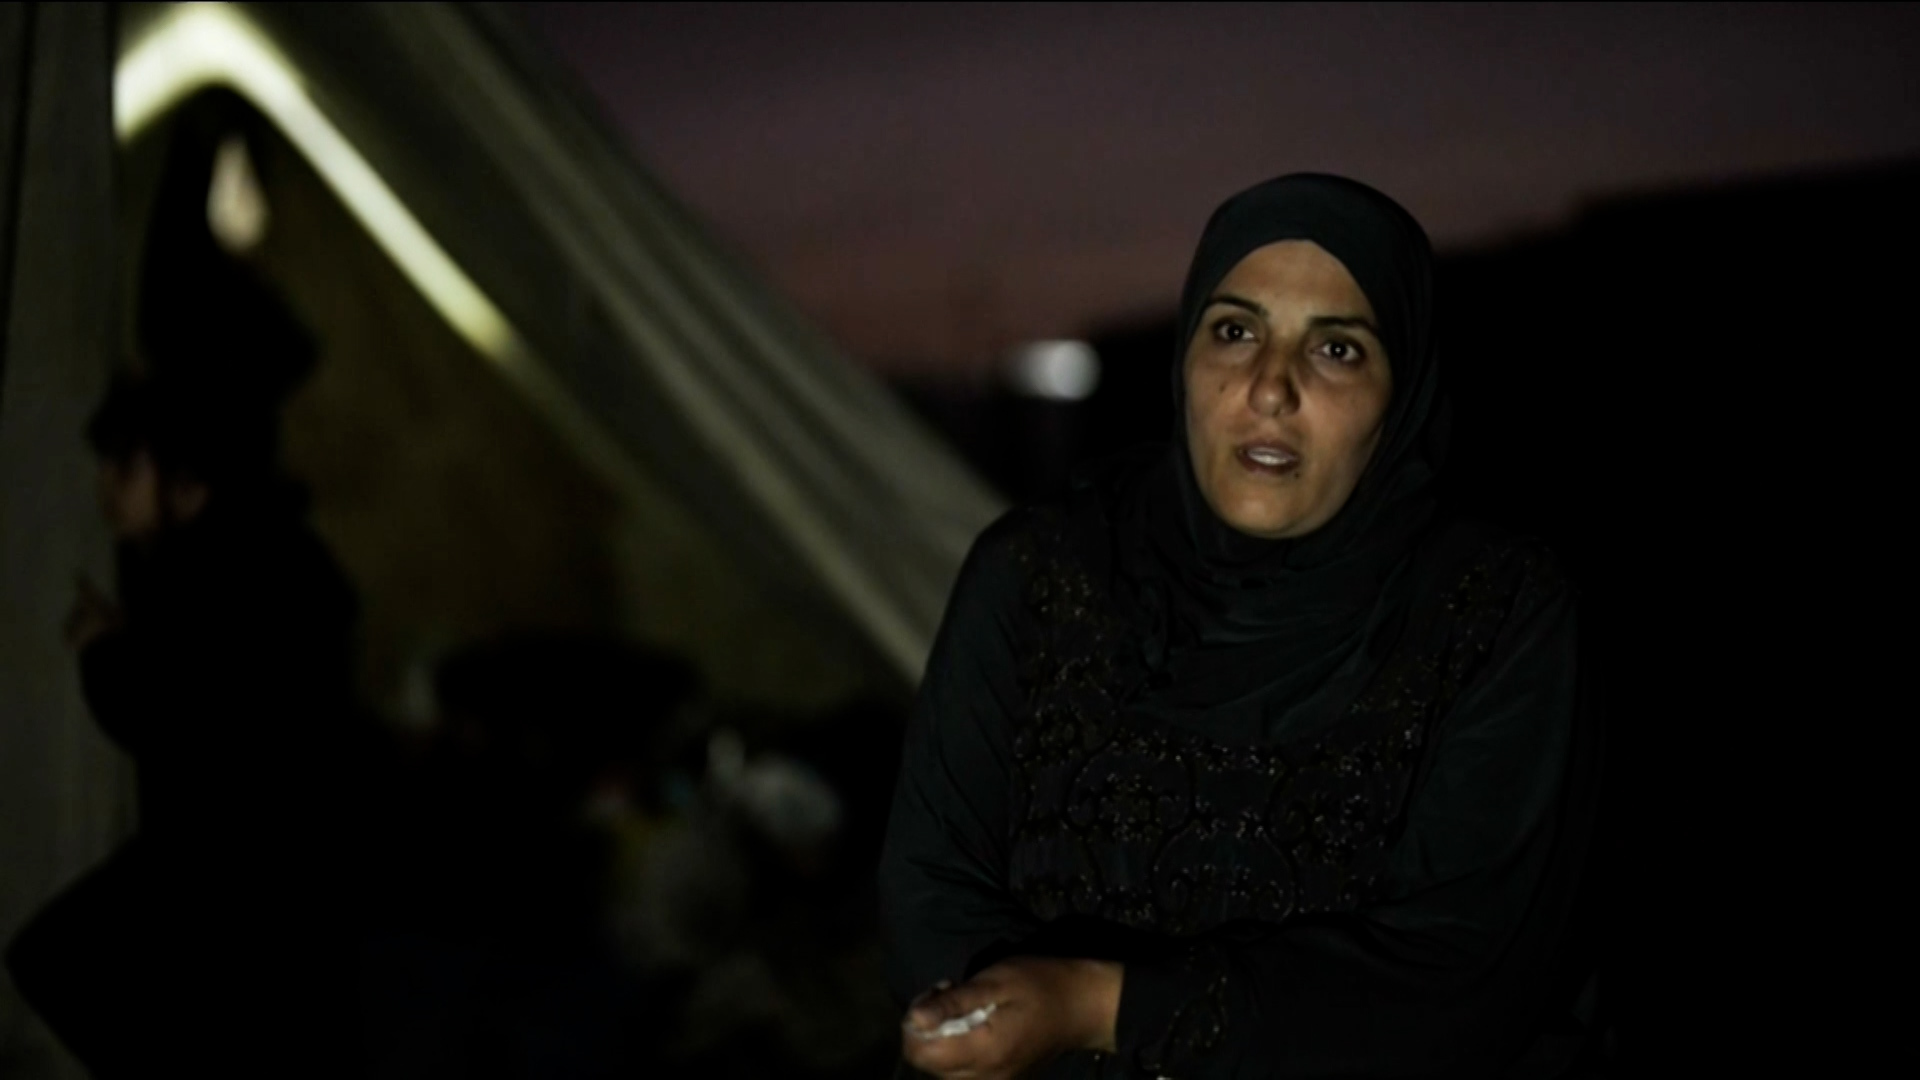 سيدة فلسطينية تحكي مأساة اعتقال الاحتلال ابنتها خلال رحلة نزوح | البرامج – البوكس نيوز